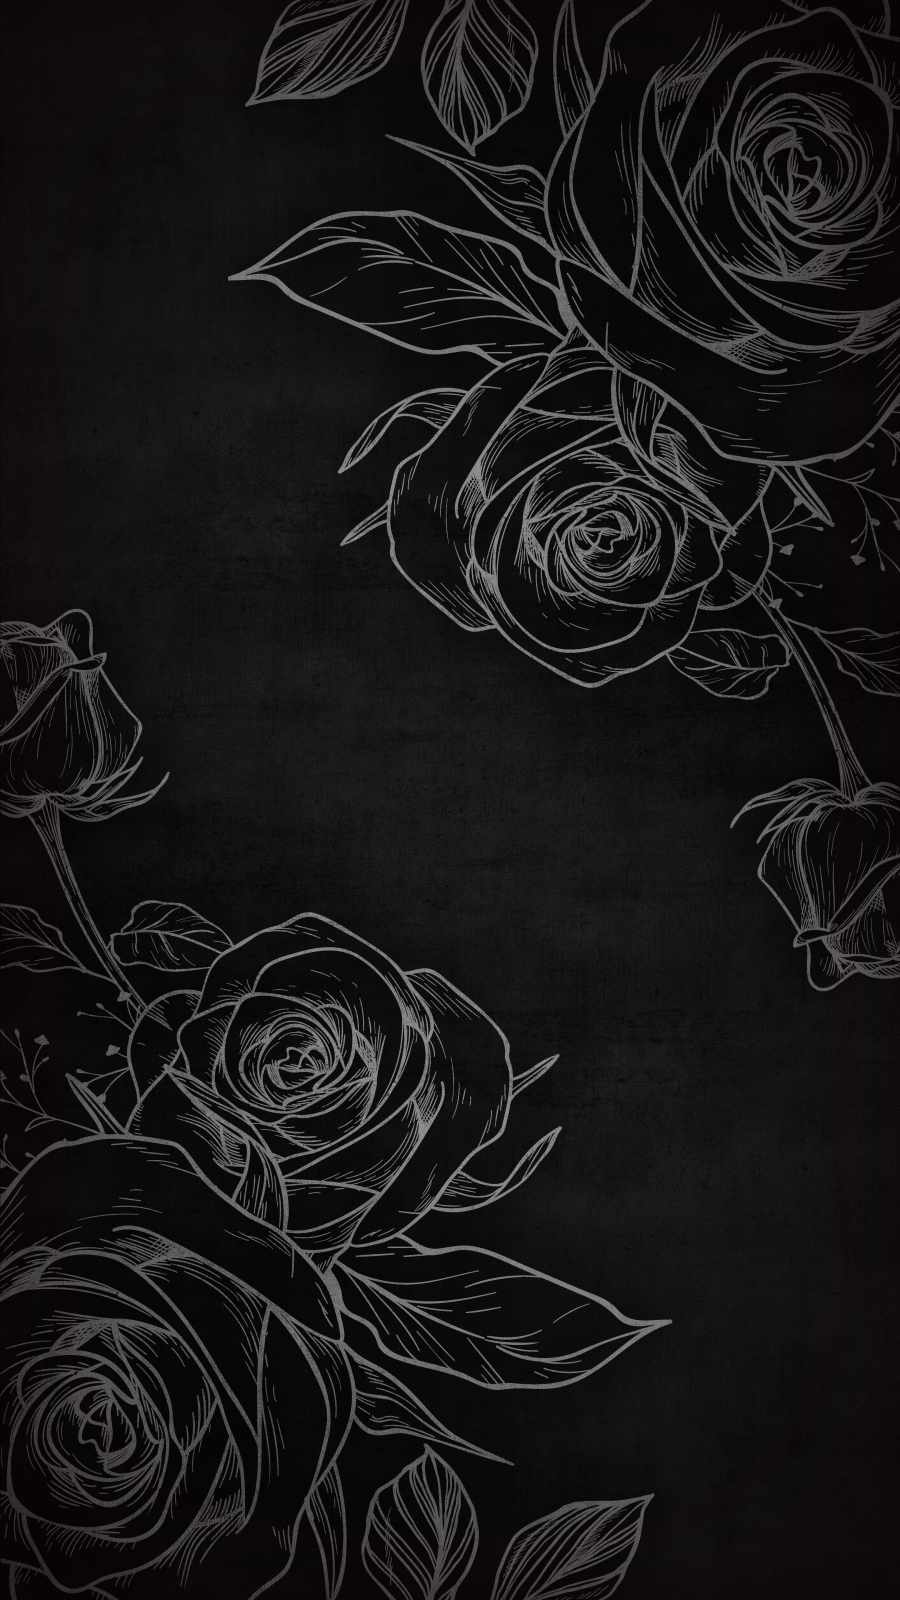 Dark Rose iPhone Wallpaper  iPhone Wallpapers